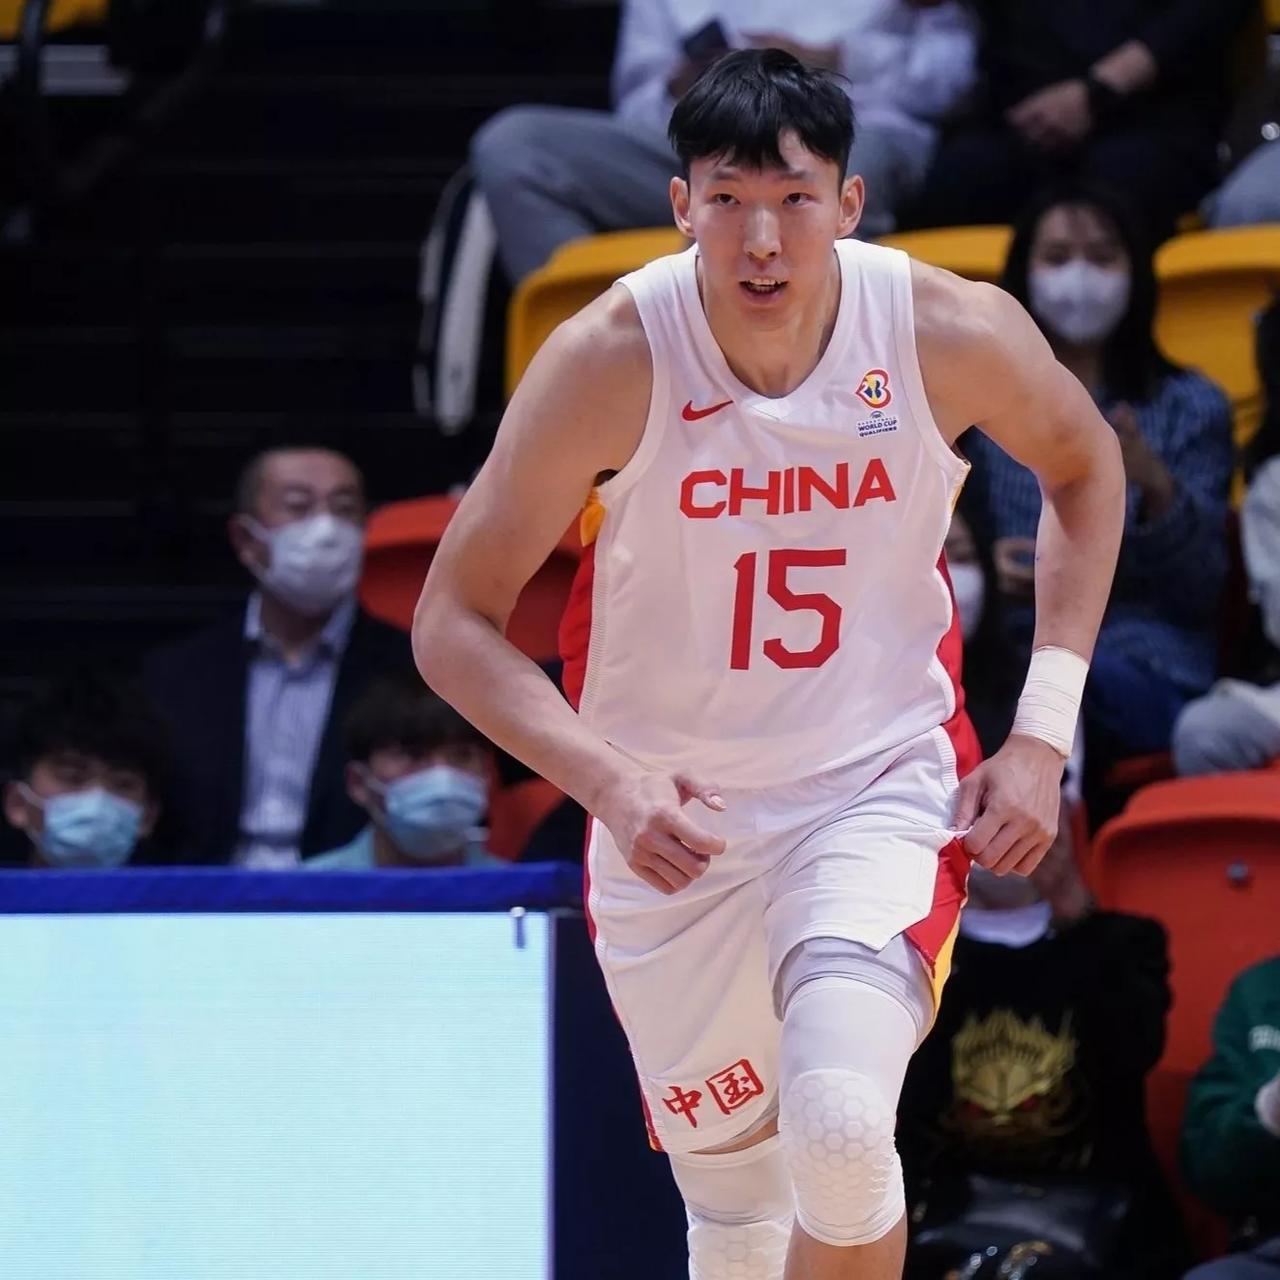 中国男篮世界杯会取得怎样的战绩……

1.3胜0负
2.2胜1负
3.1胜2负
